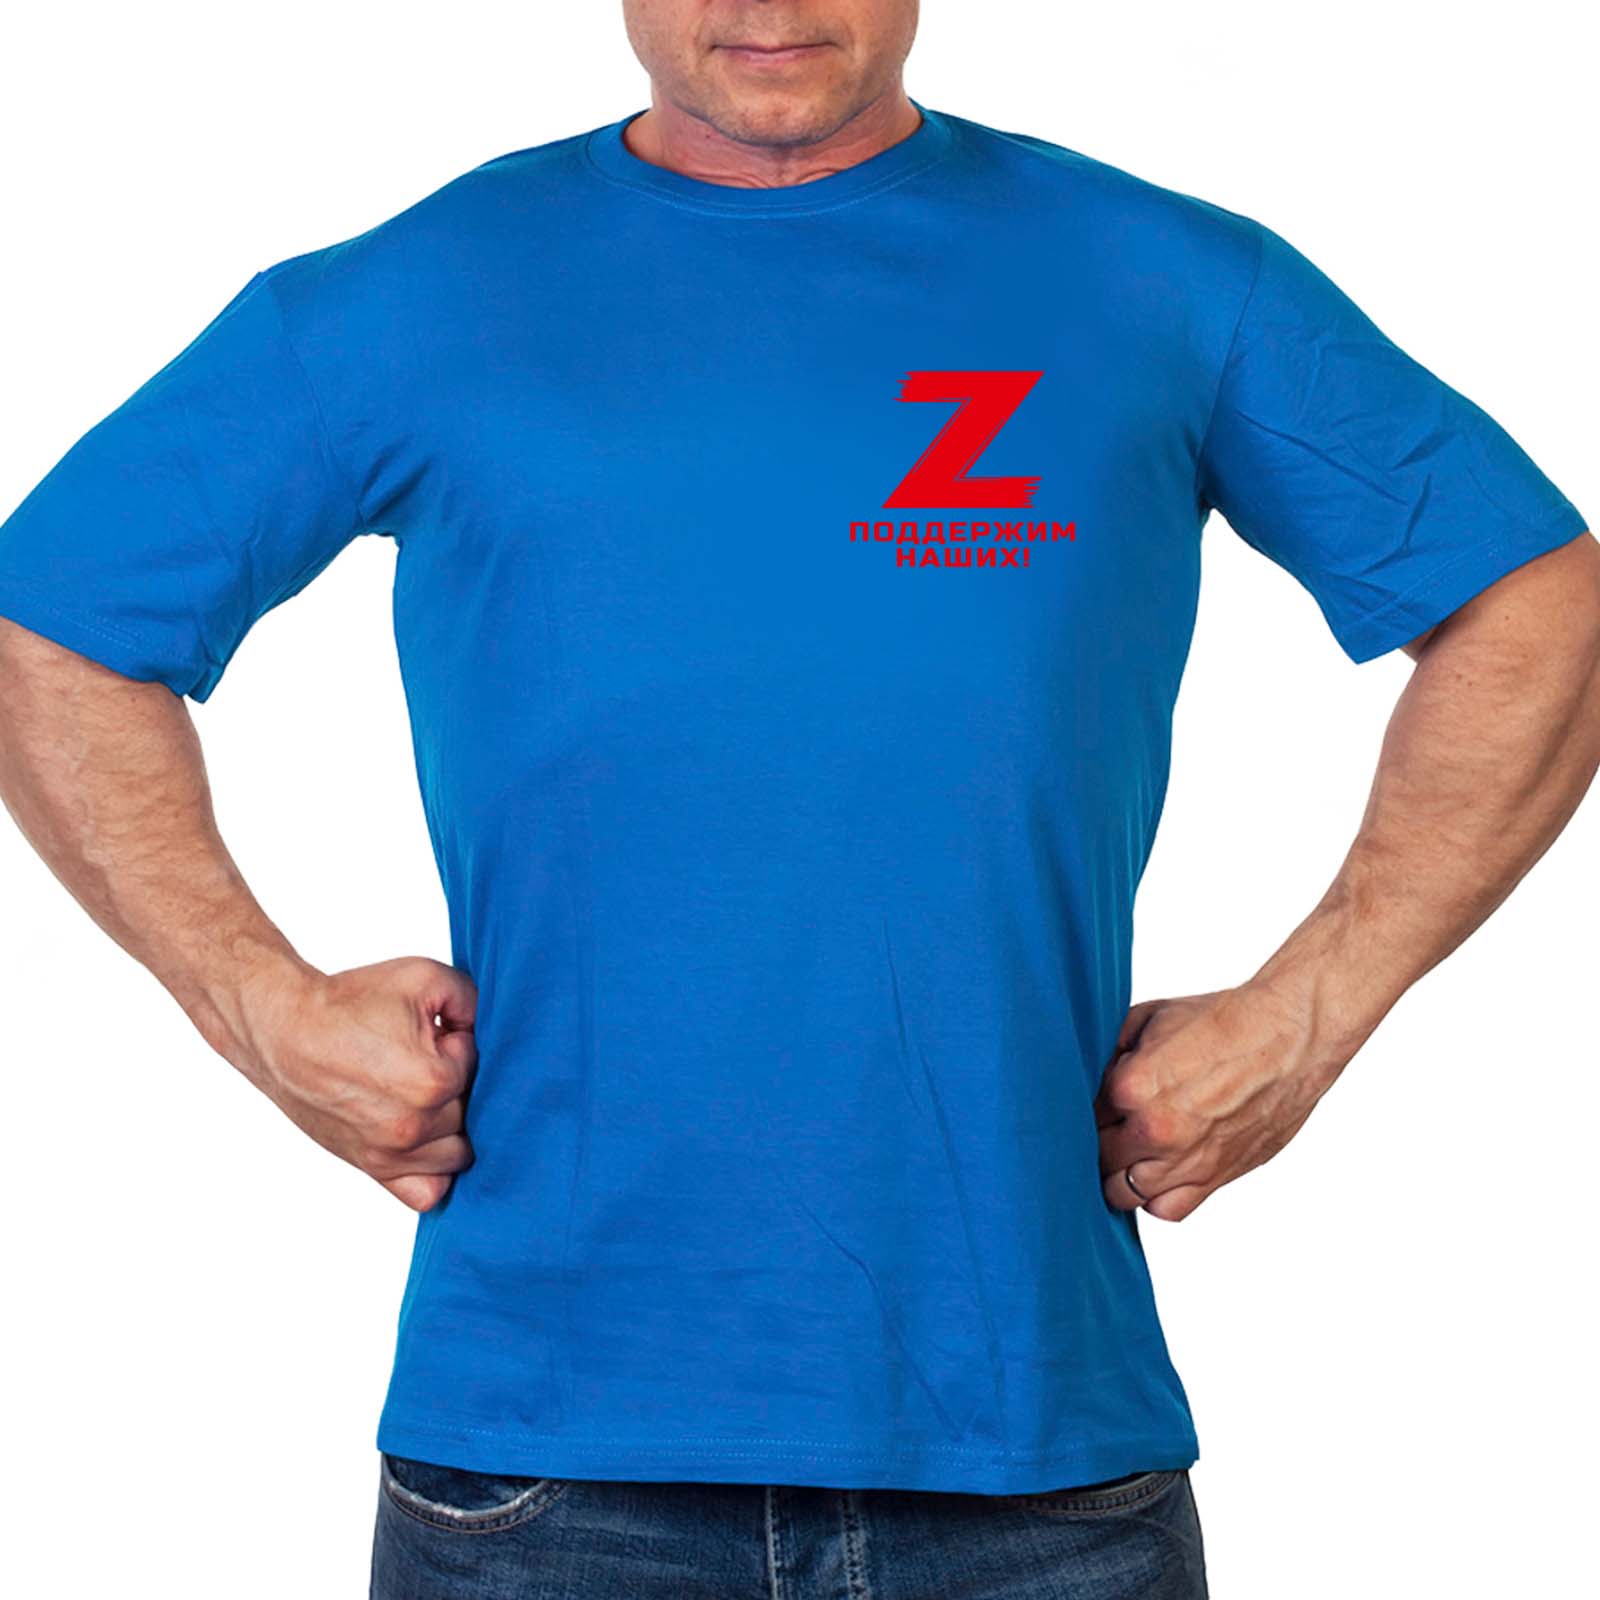 Васильковая футболка с термоаппликацией Z "Поддержим наших!"